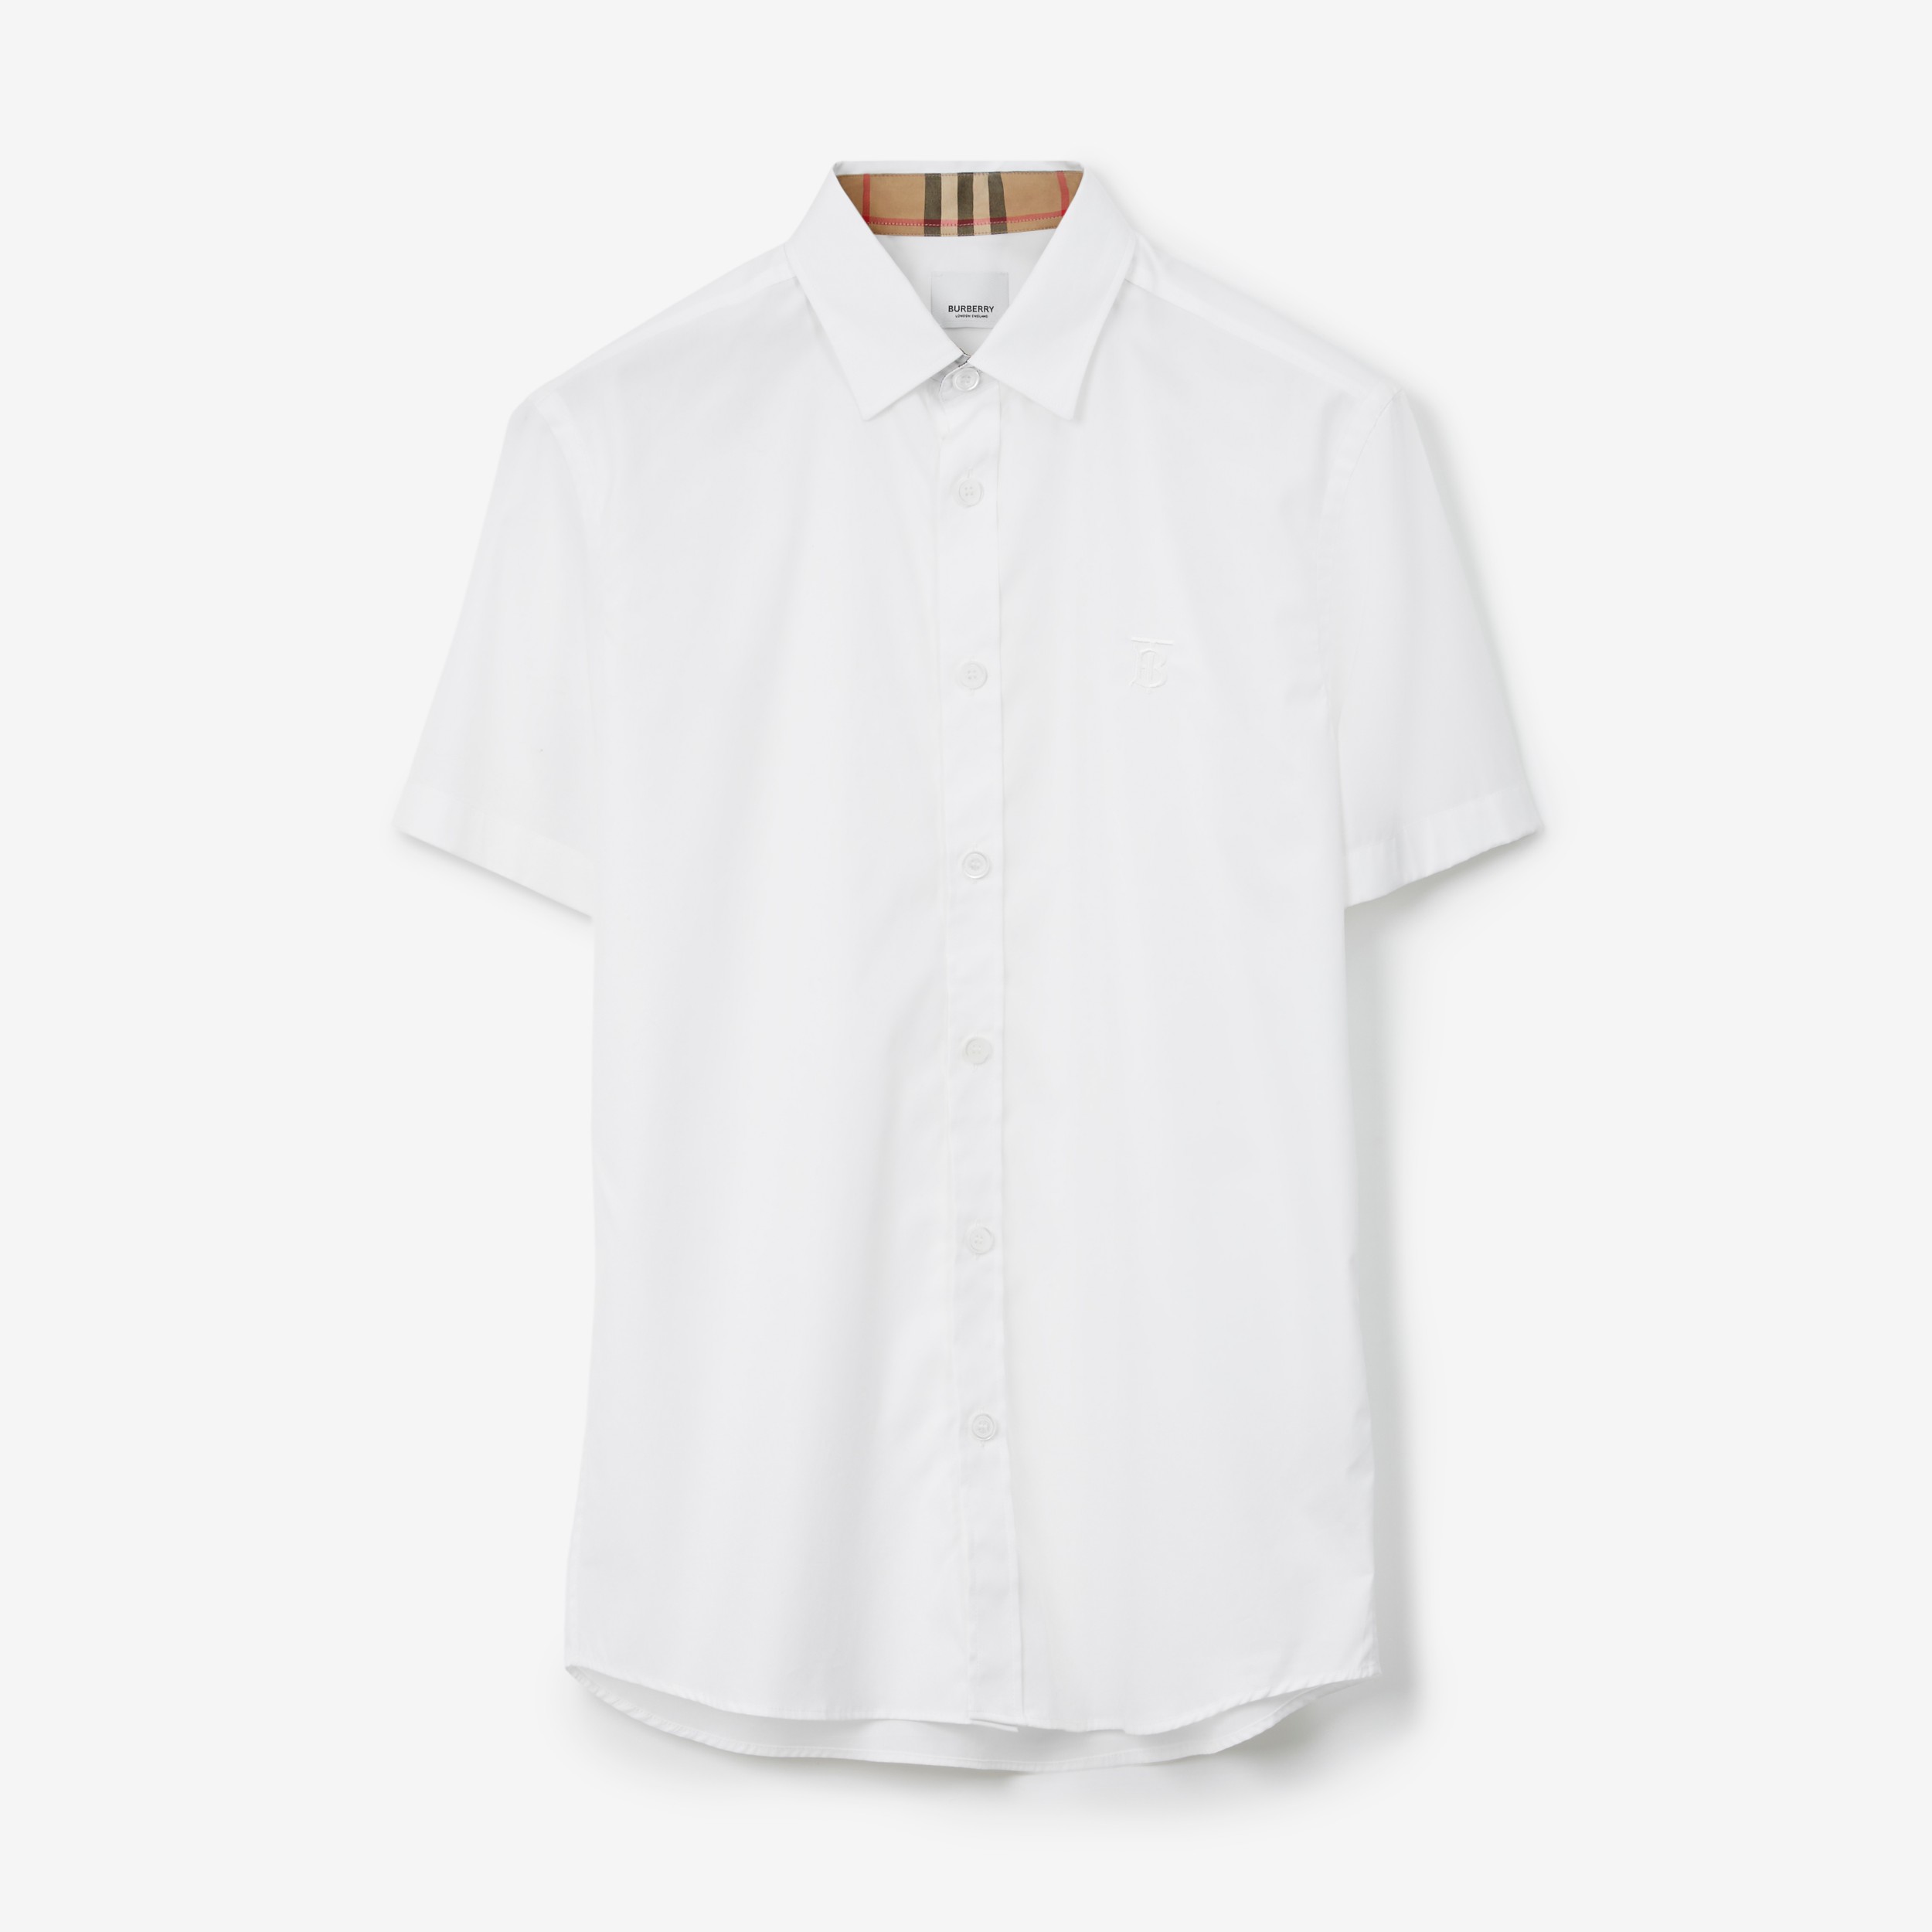 Total 67+ imagen burberry short sleeve shirt white